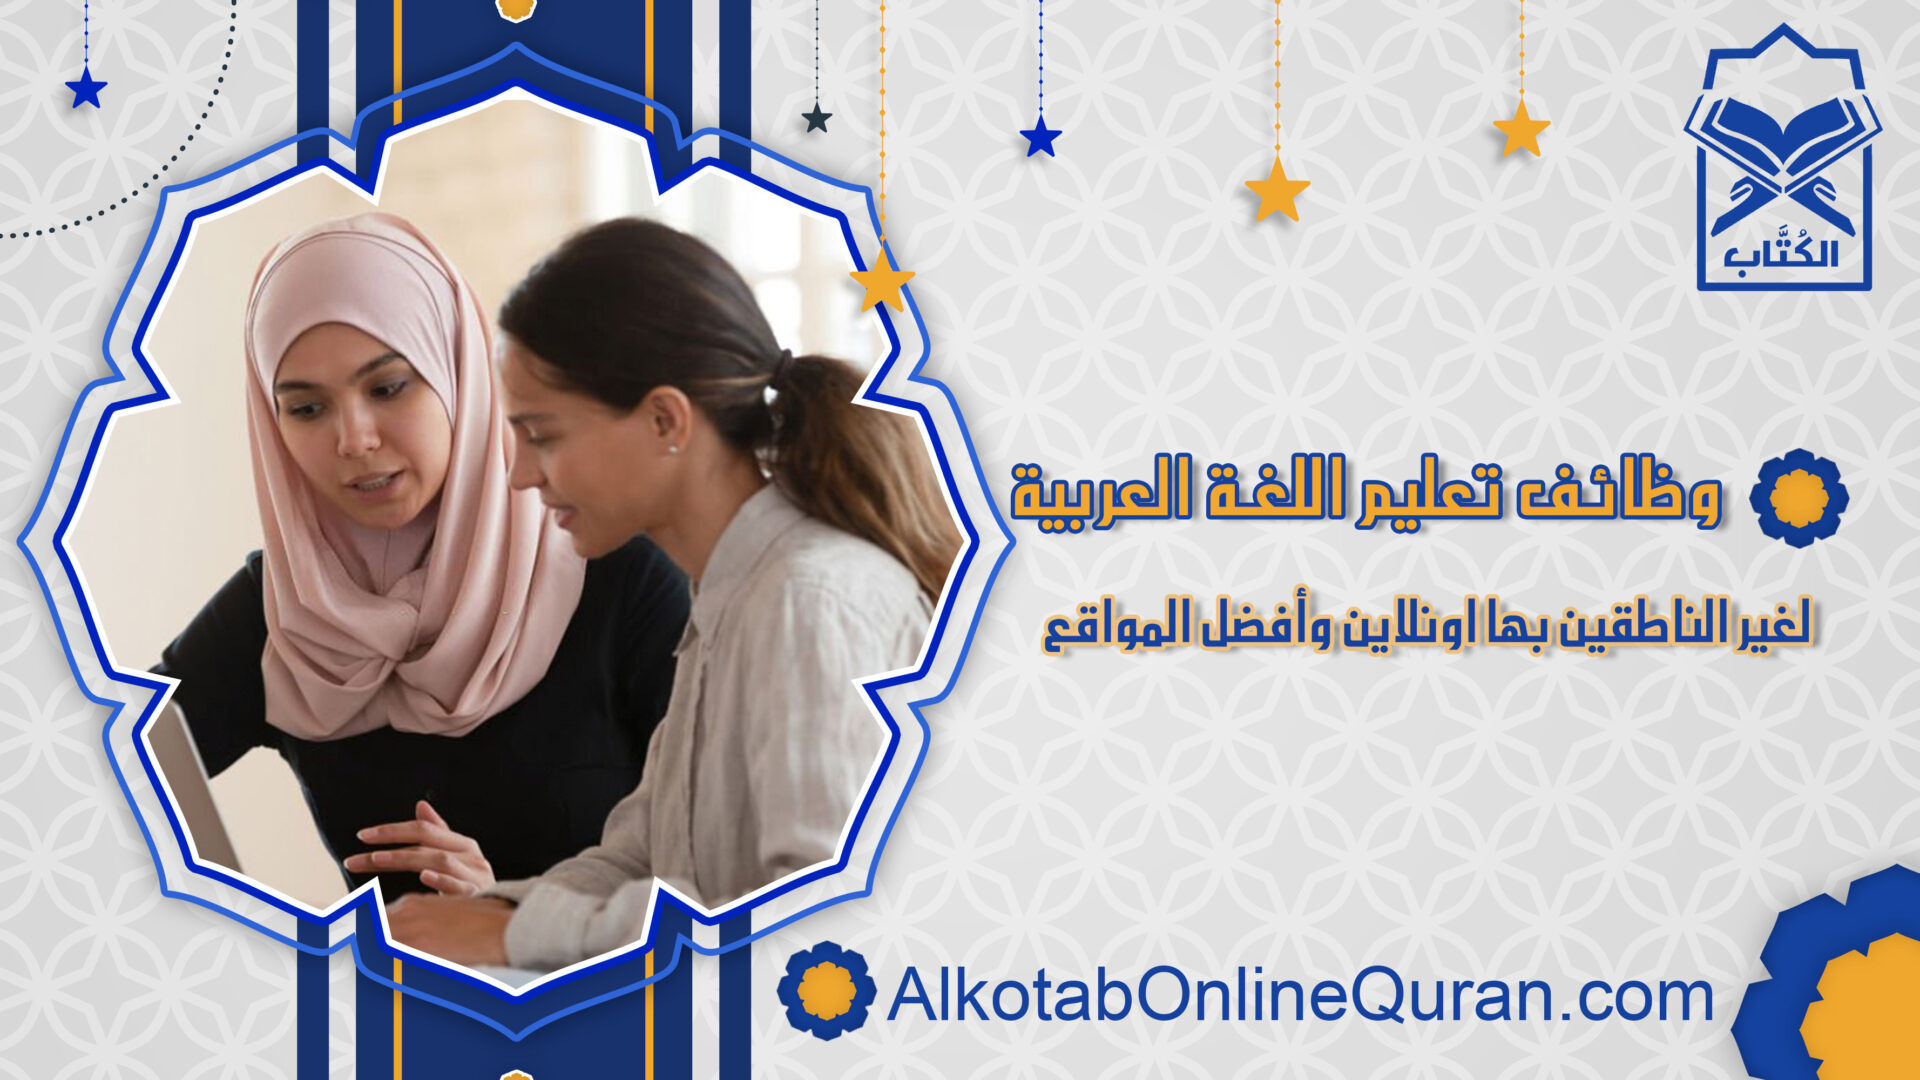 وظائف تعليم اللغة العربية لغير الناطقين بها اونلاين وأفضل المواقع